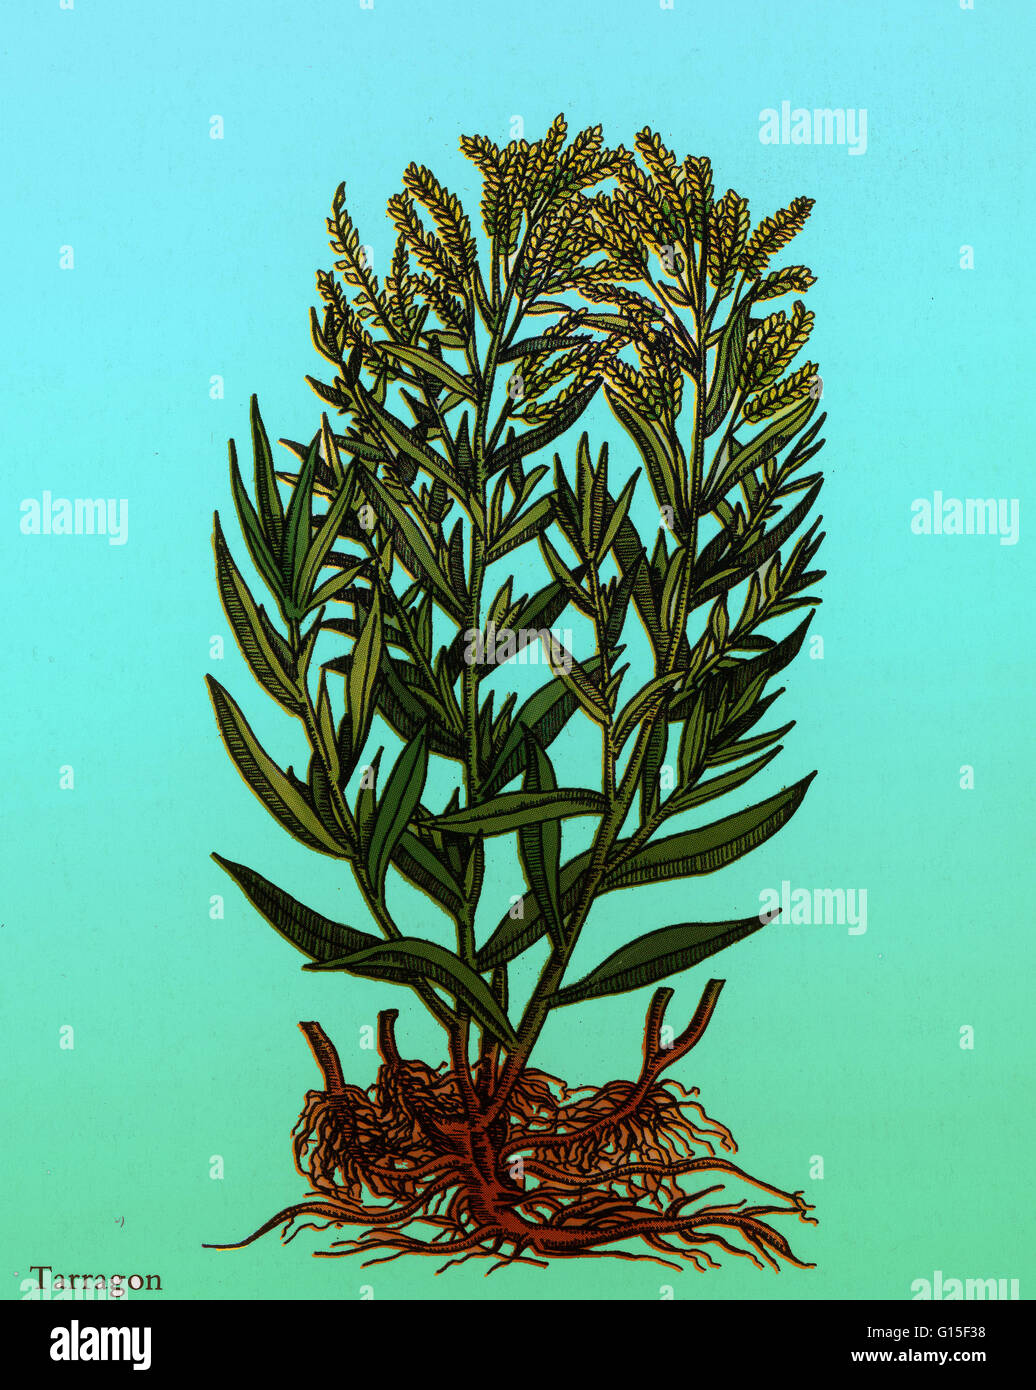 Estragon oder des Drachen-Scharte (Artemisia Dracunculus) ist eine mehrjährige Pflanze in der Familie, die Asteraceae Wermut verwandt. Entsprechend seinen Artnamen, ist ein gebräuchlicher Begriff für das Werk "Drachen Kraut". Heimisch ist Sie in einem weiten Bereich der nördlichen Hemisphäre her Stockfoto